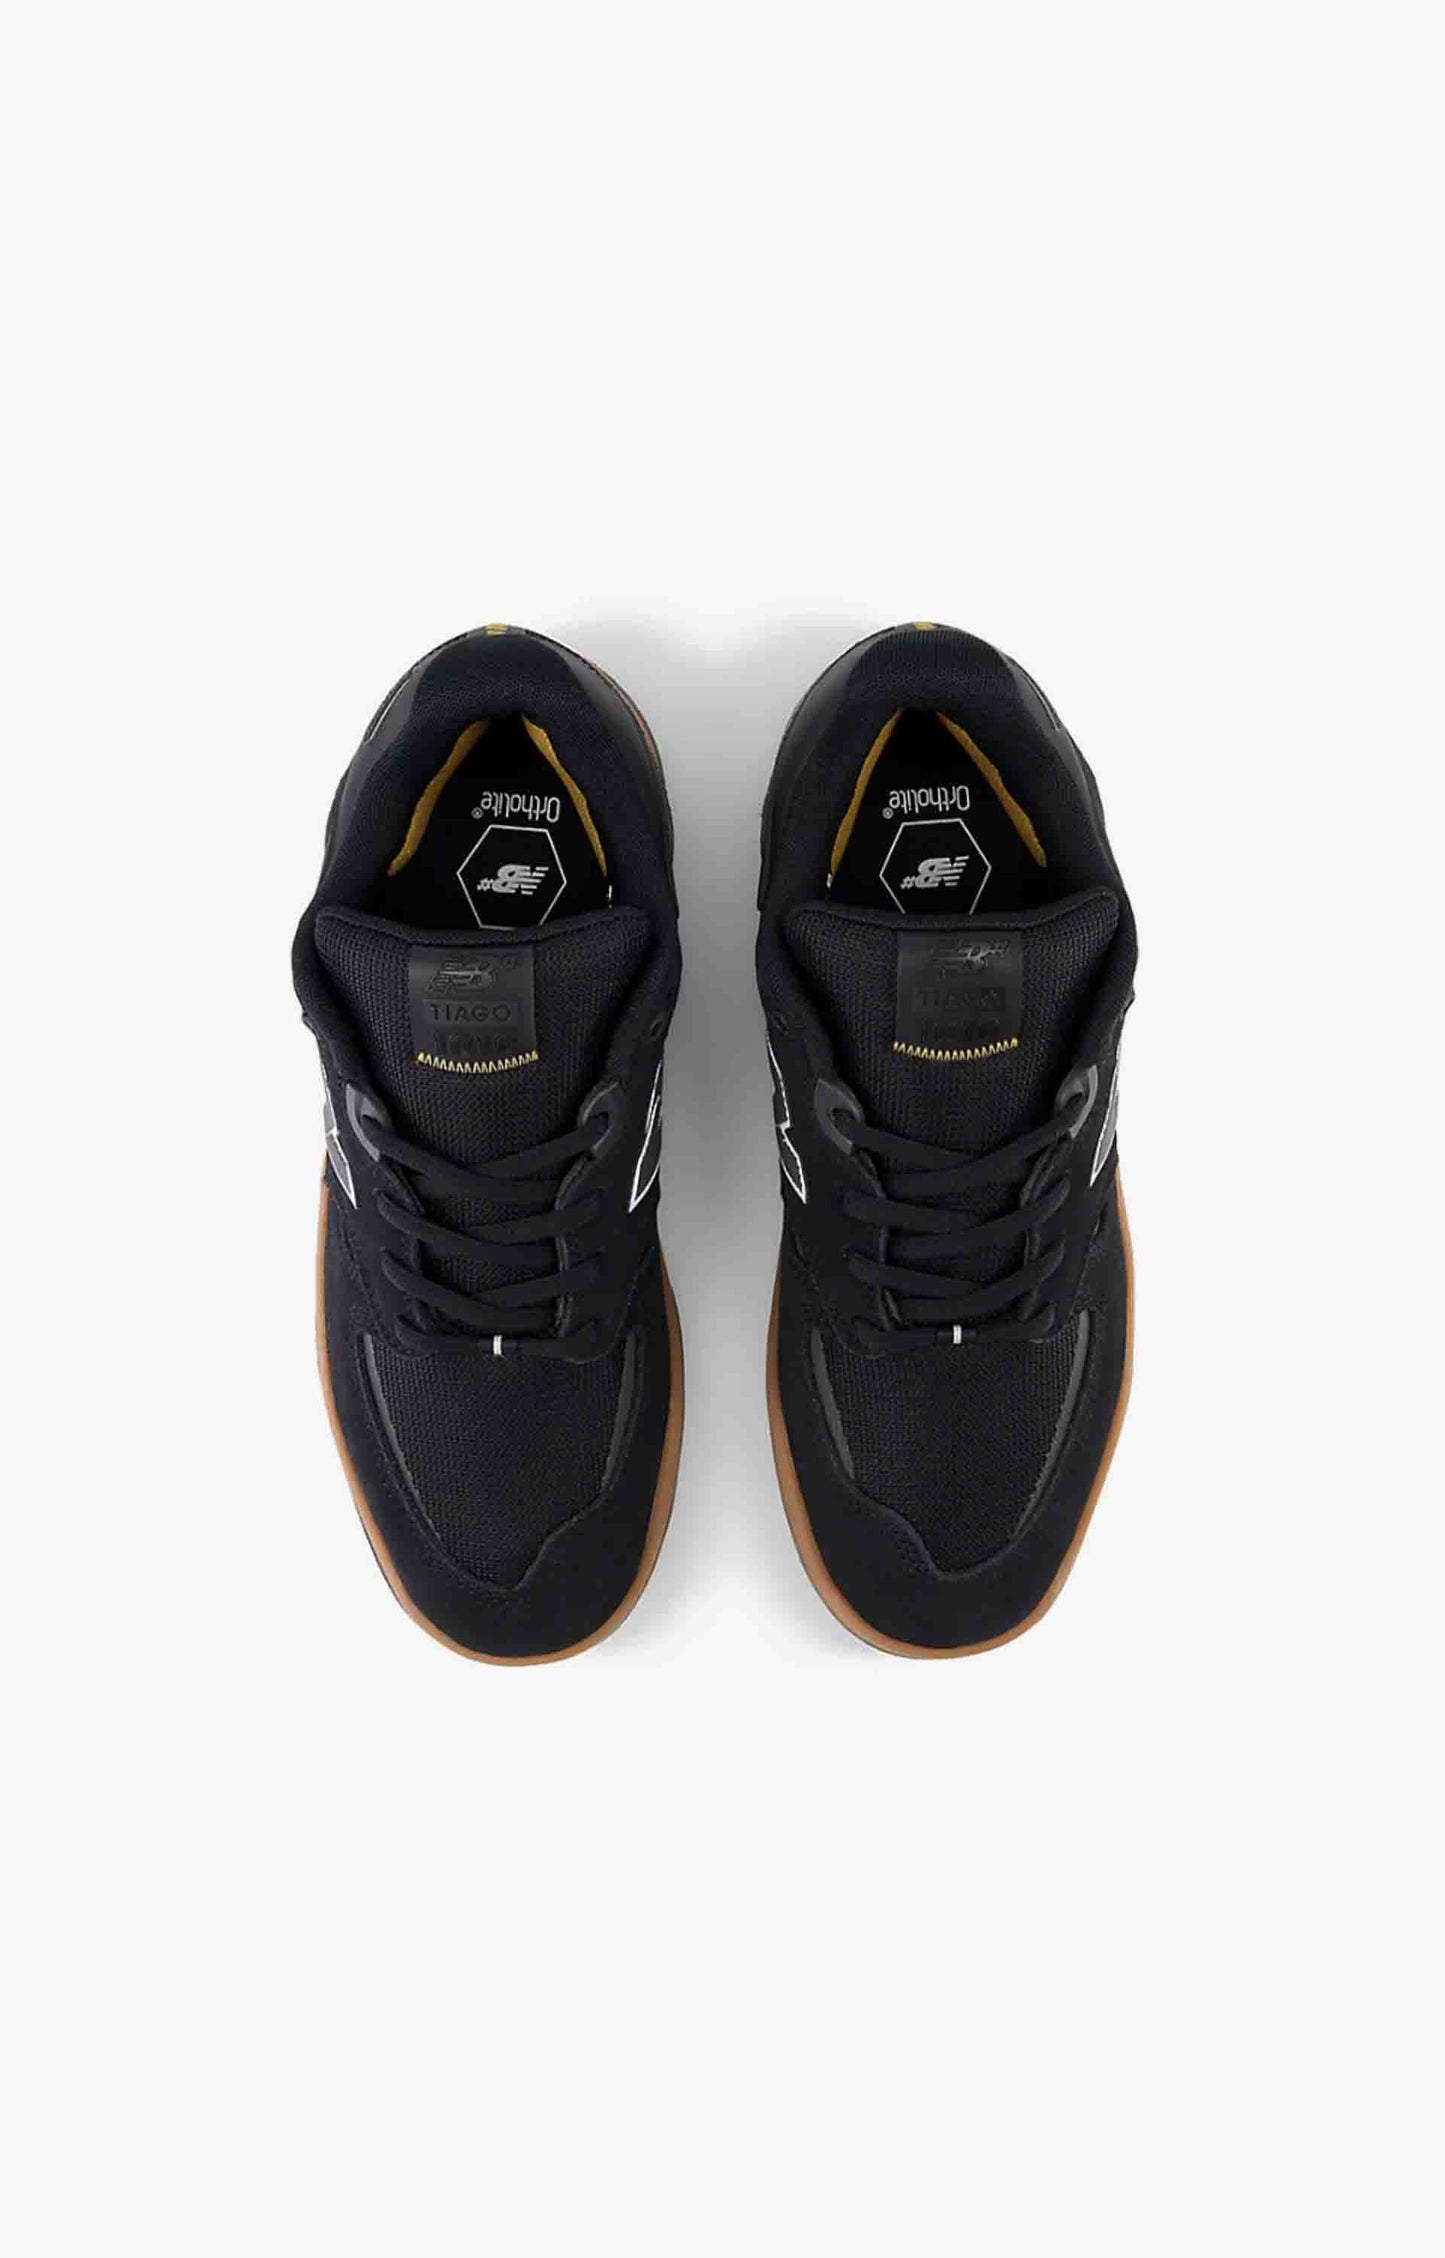 New Balance Numeric NM1010BC Black/Gum, Shoe